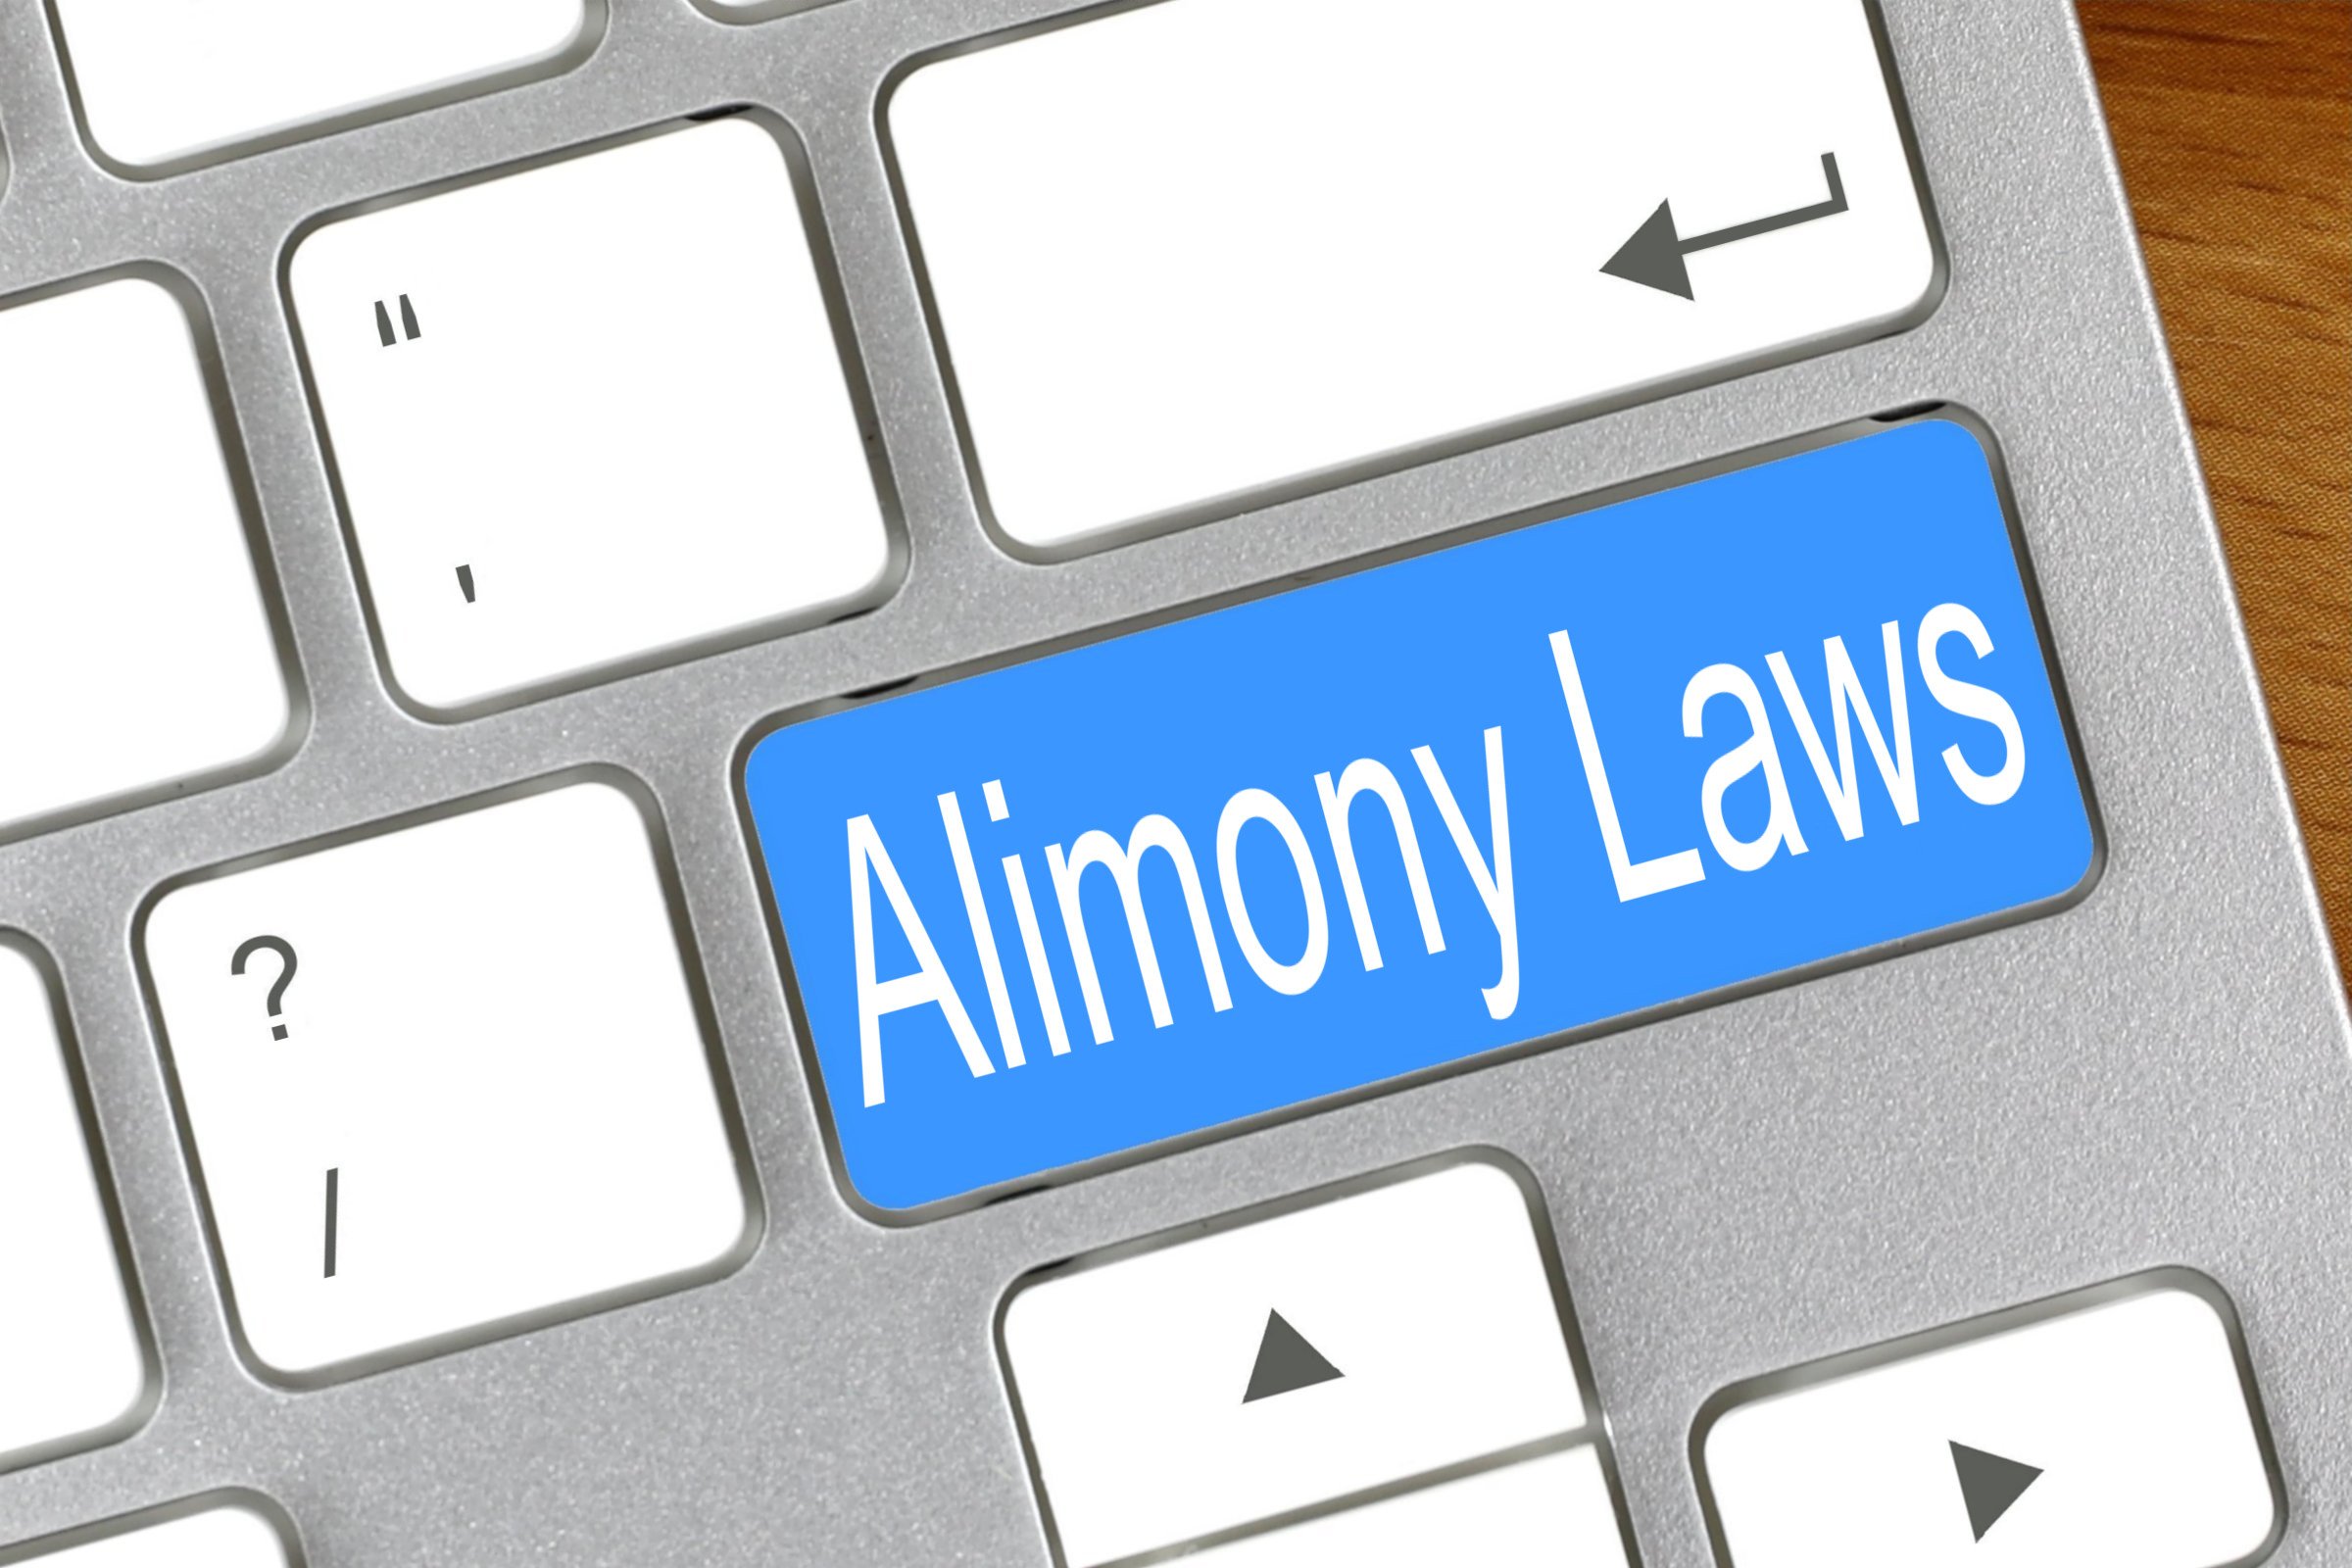 alimony laws